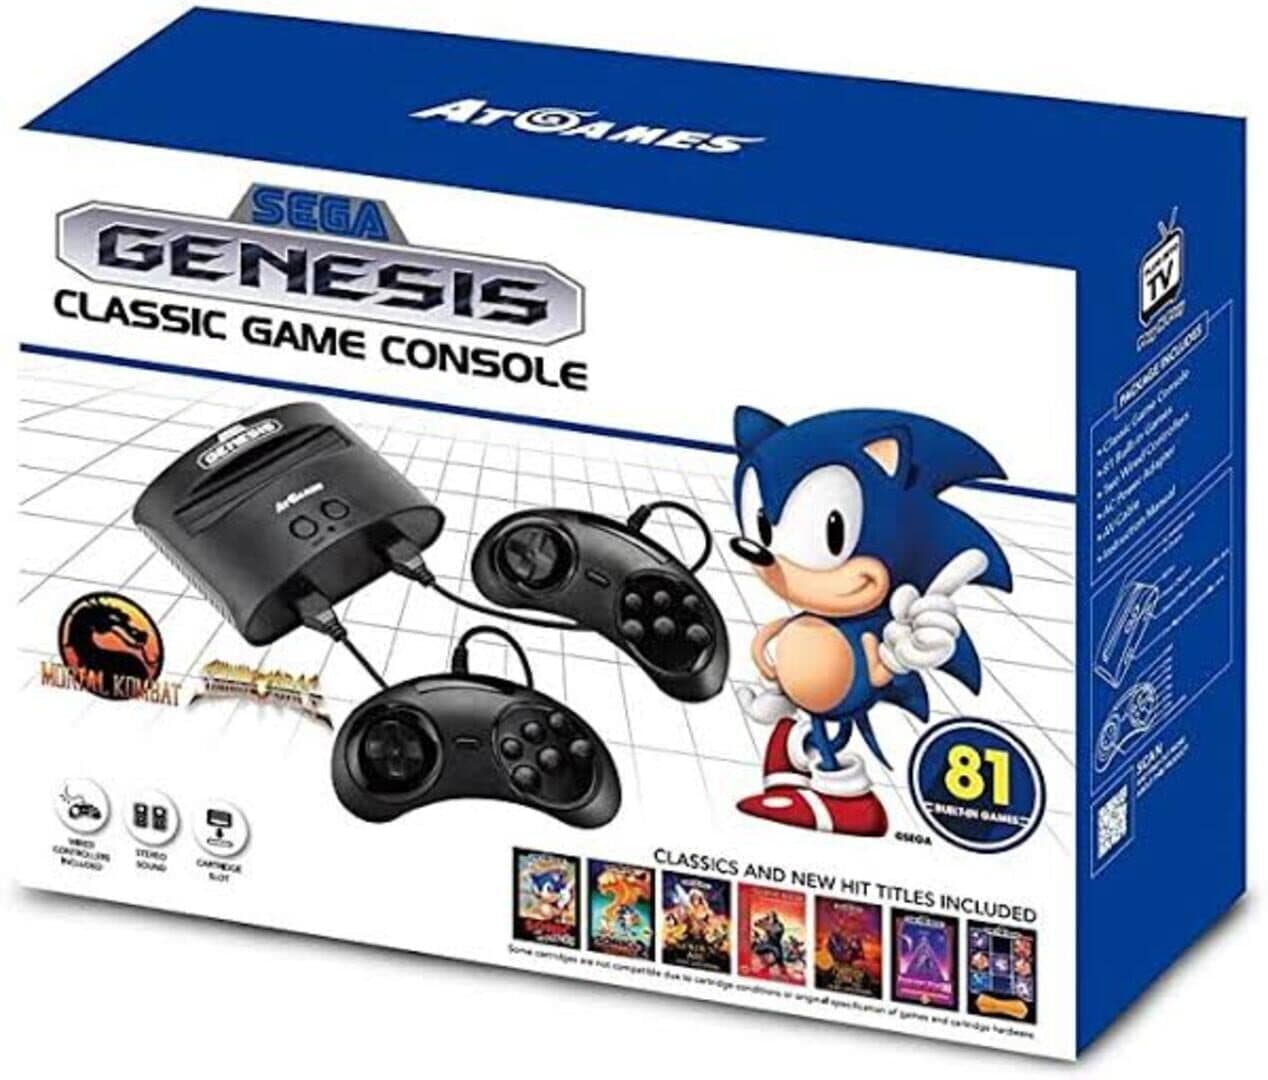 Sega Genesis Classic Game Console Image